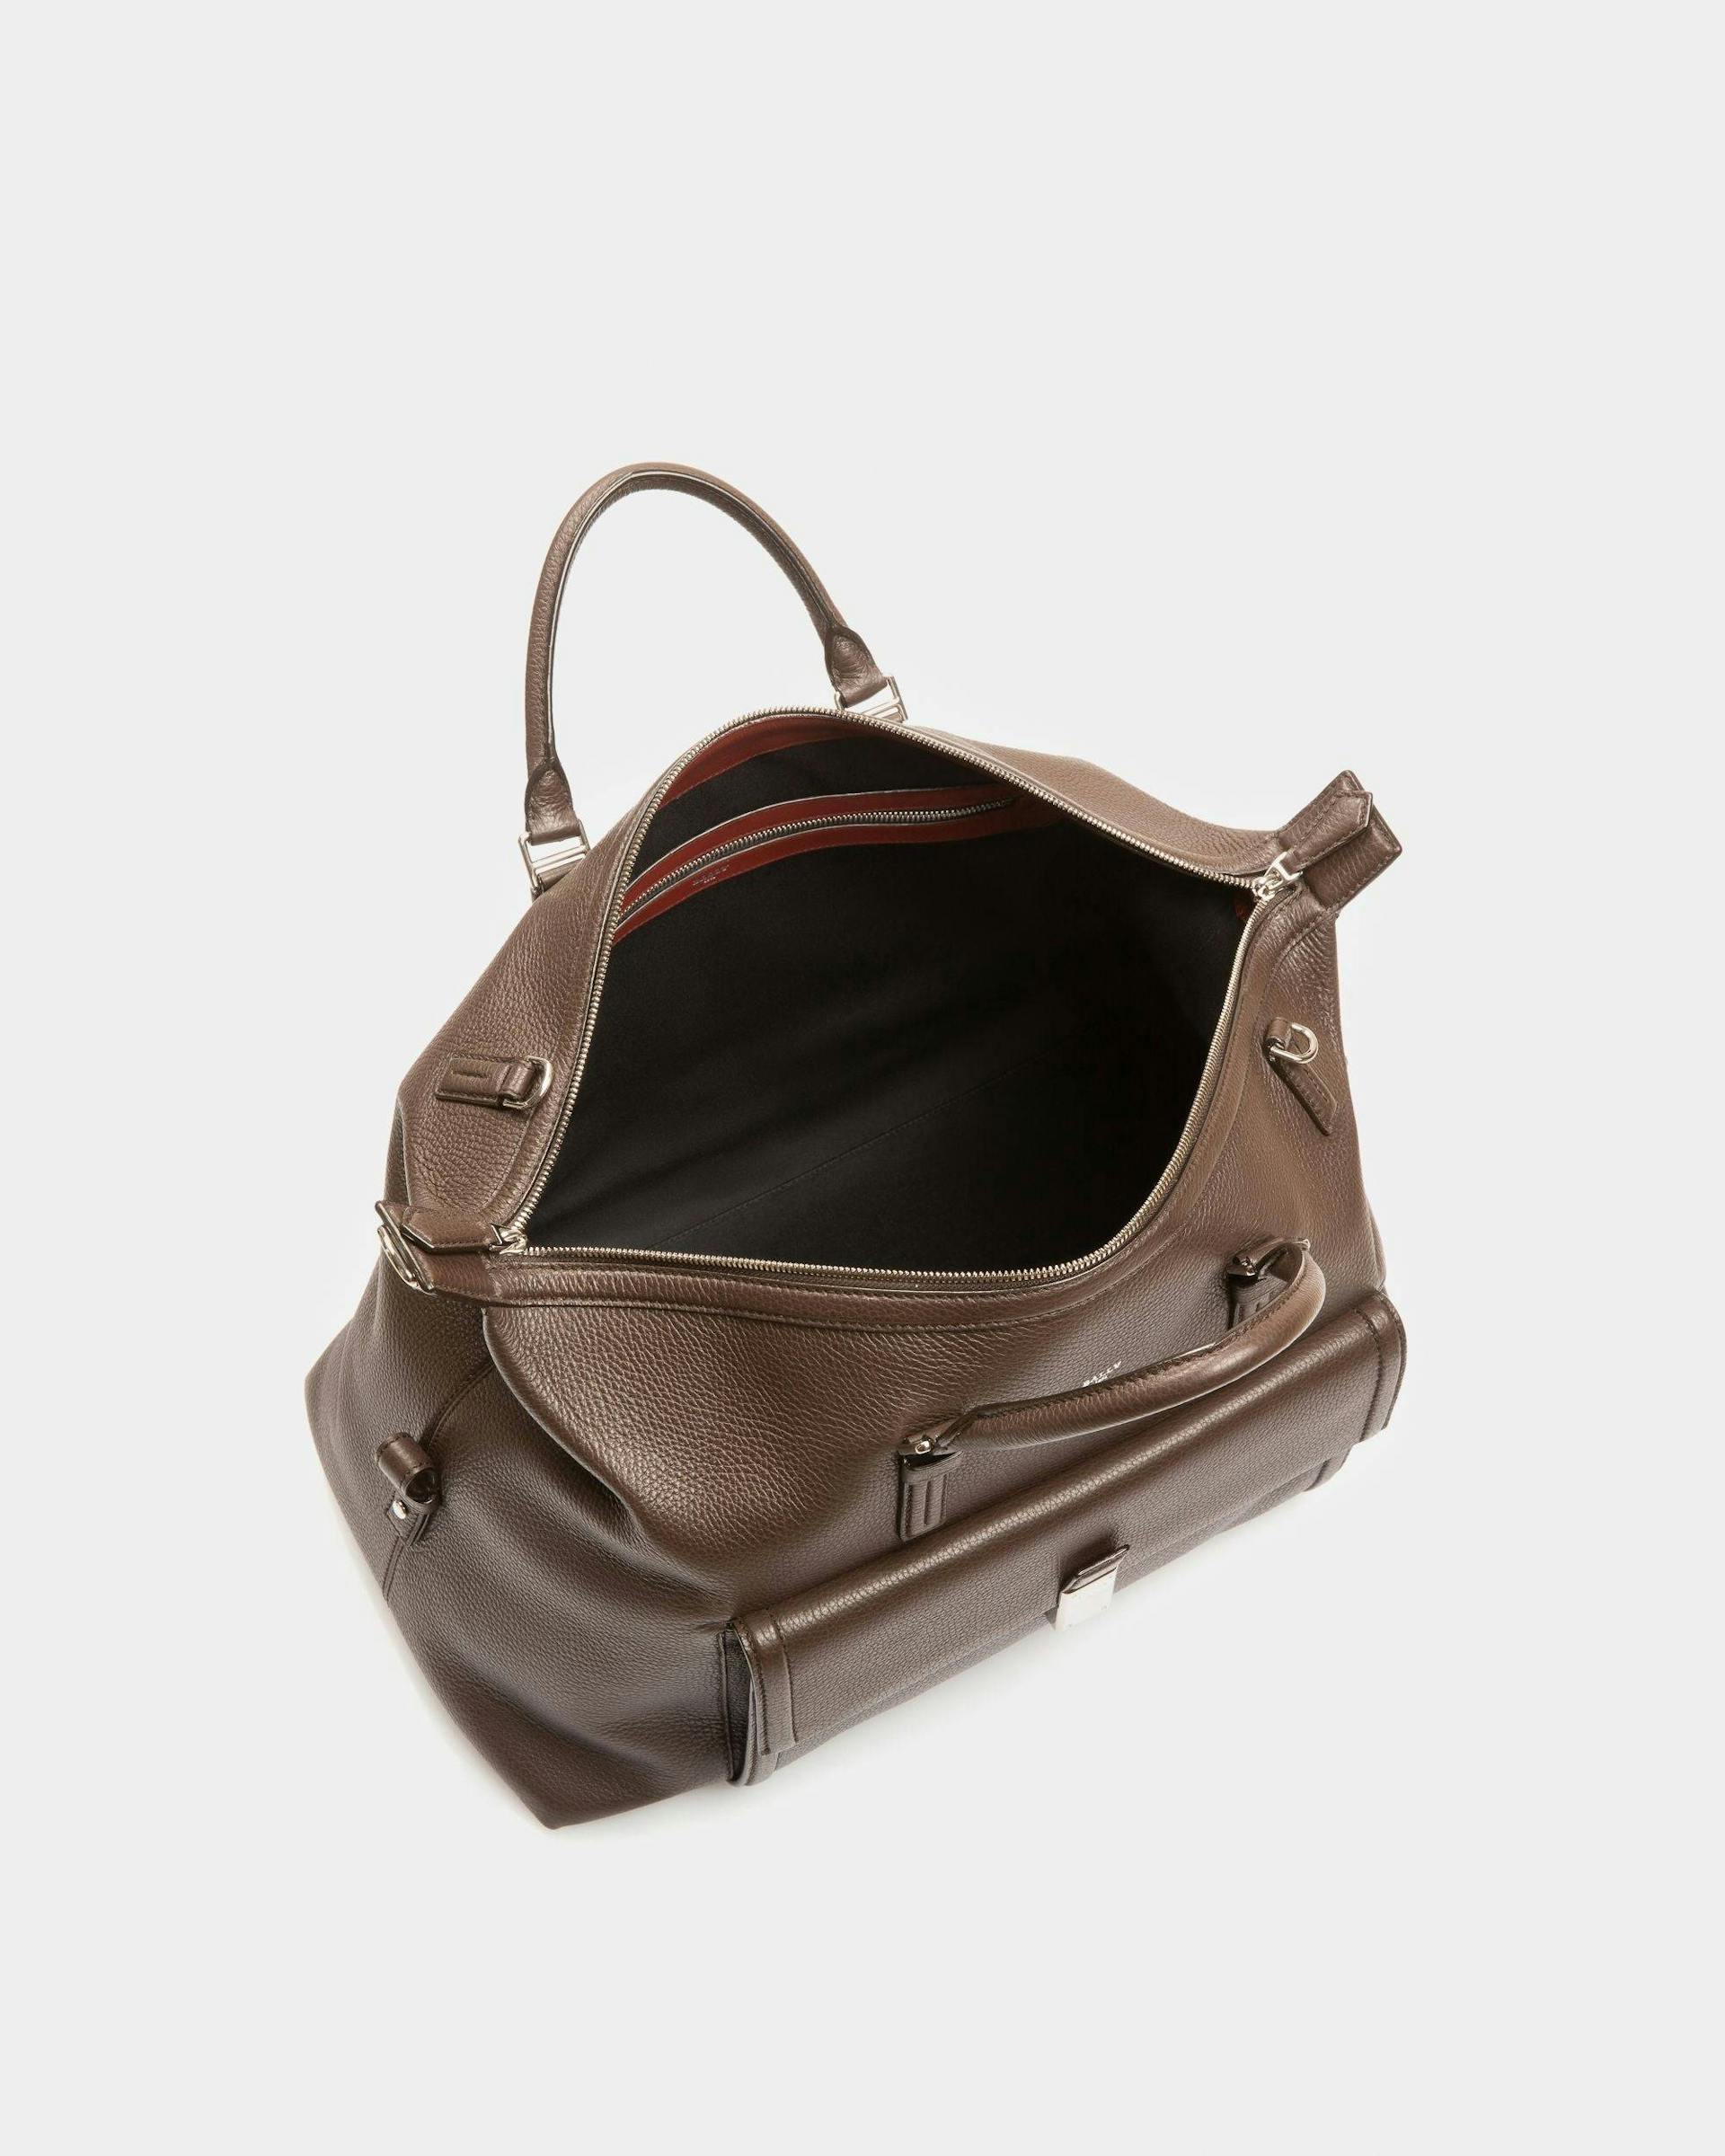 Sandri Leather Weekender Bag In Ebony Brown - Men's - Bally - 04